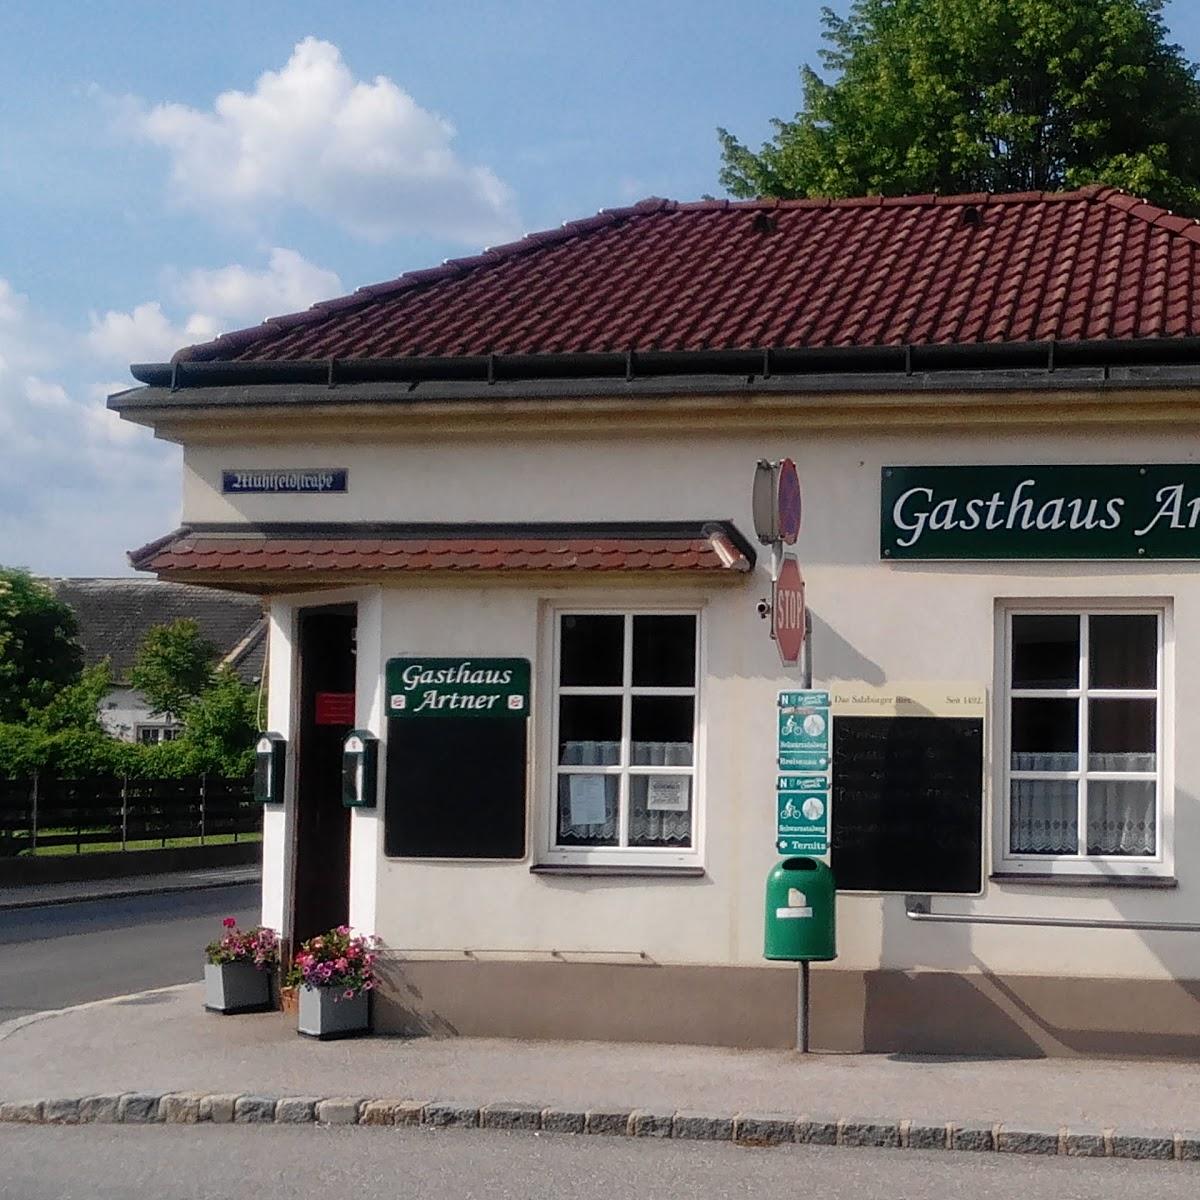 Restaurant "Gasthaus Artner" in Neunkirchen